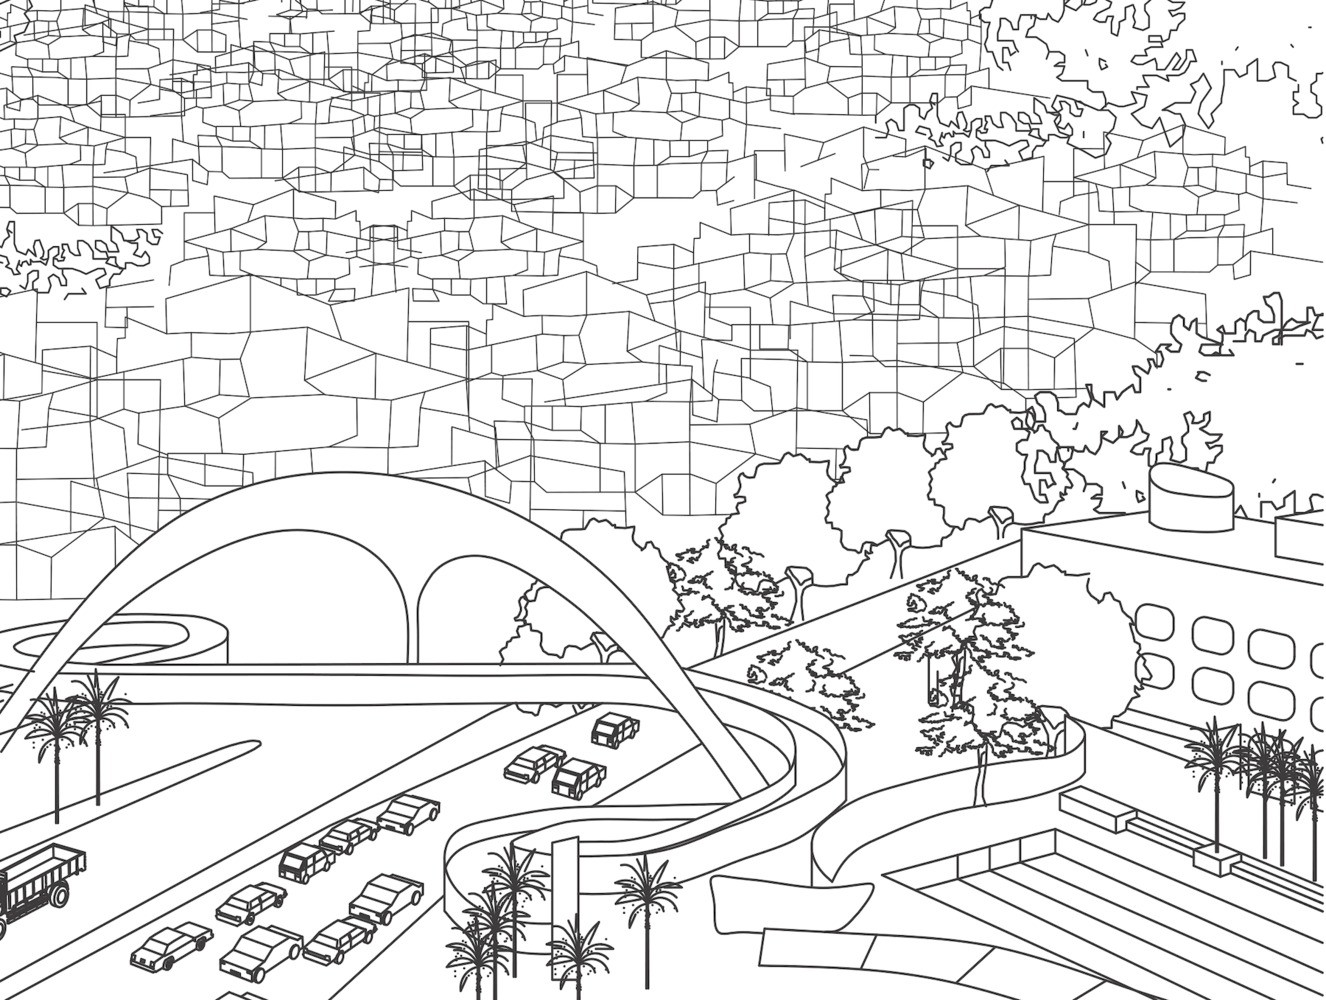 Rio de Janeiro ganha livro de colorir sobre arquitetura (Foto: a)